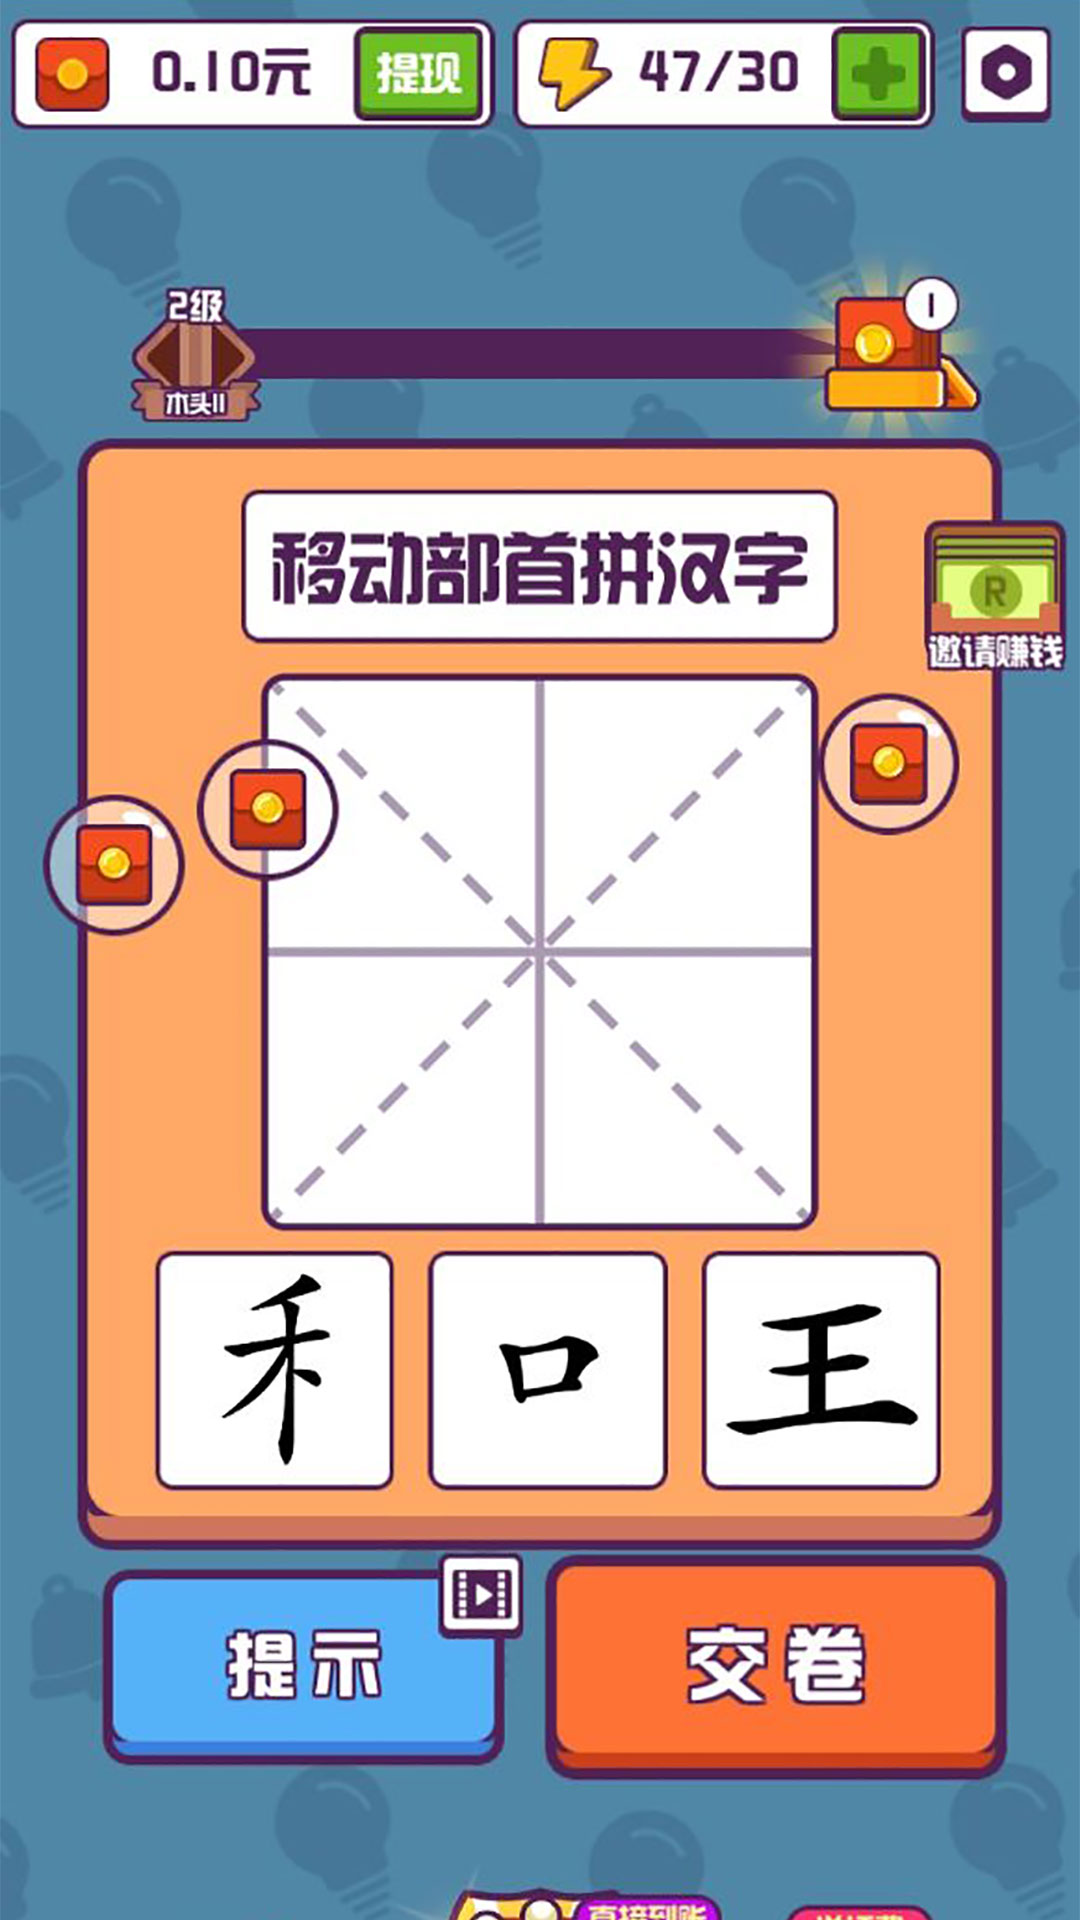 有趣的汉字游戏首充号申请,首充号怎么弄的